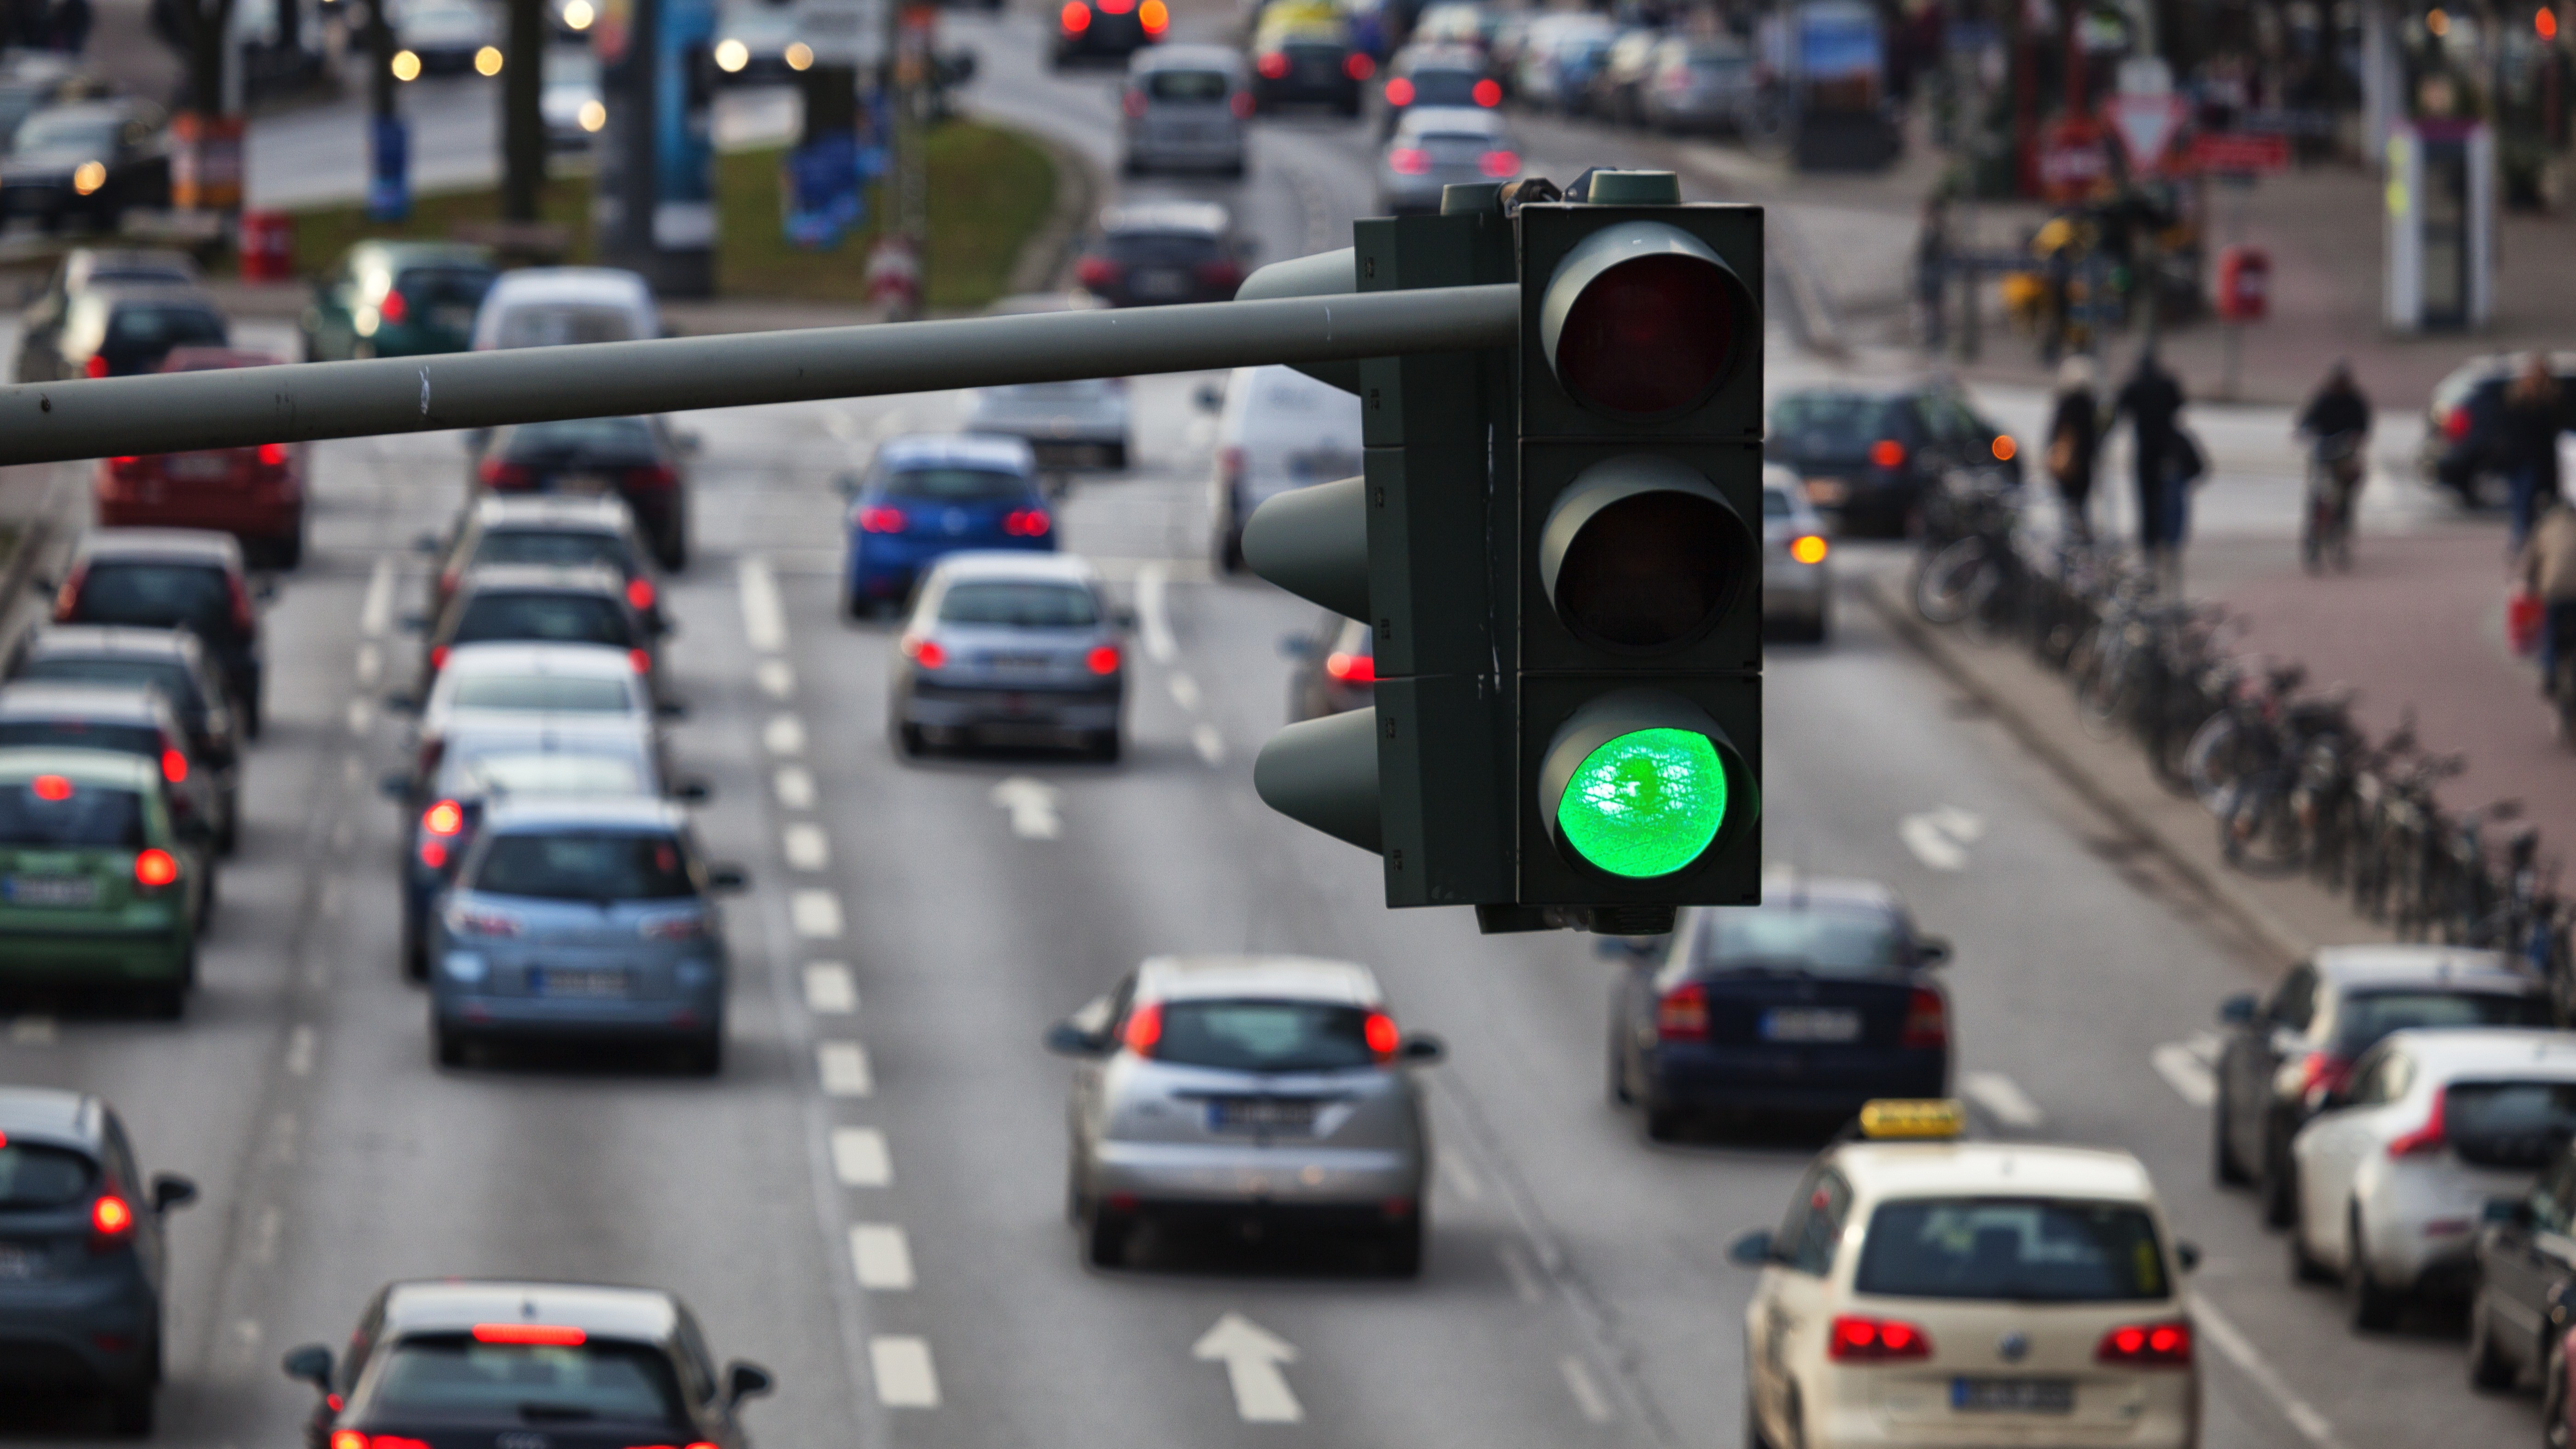 Eine Verkehrsampel leuchtet grün. Im Hintergrund sind viele Autos im Stadtverkehr zu sehen.